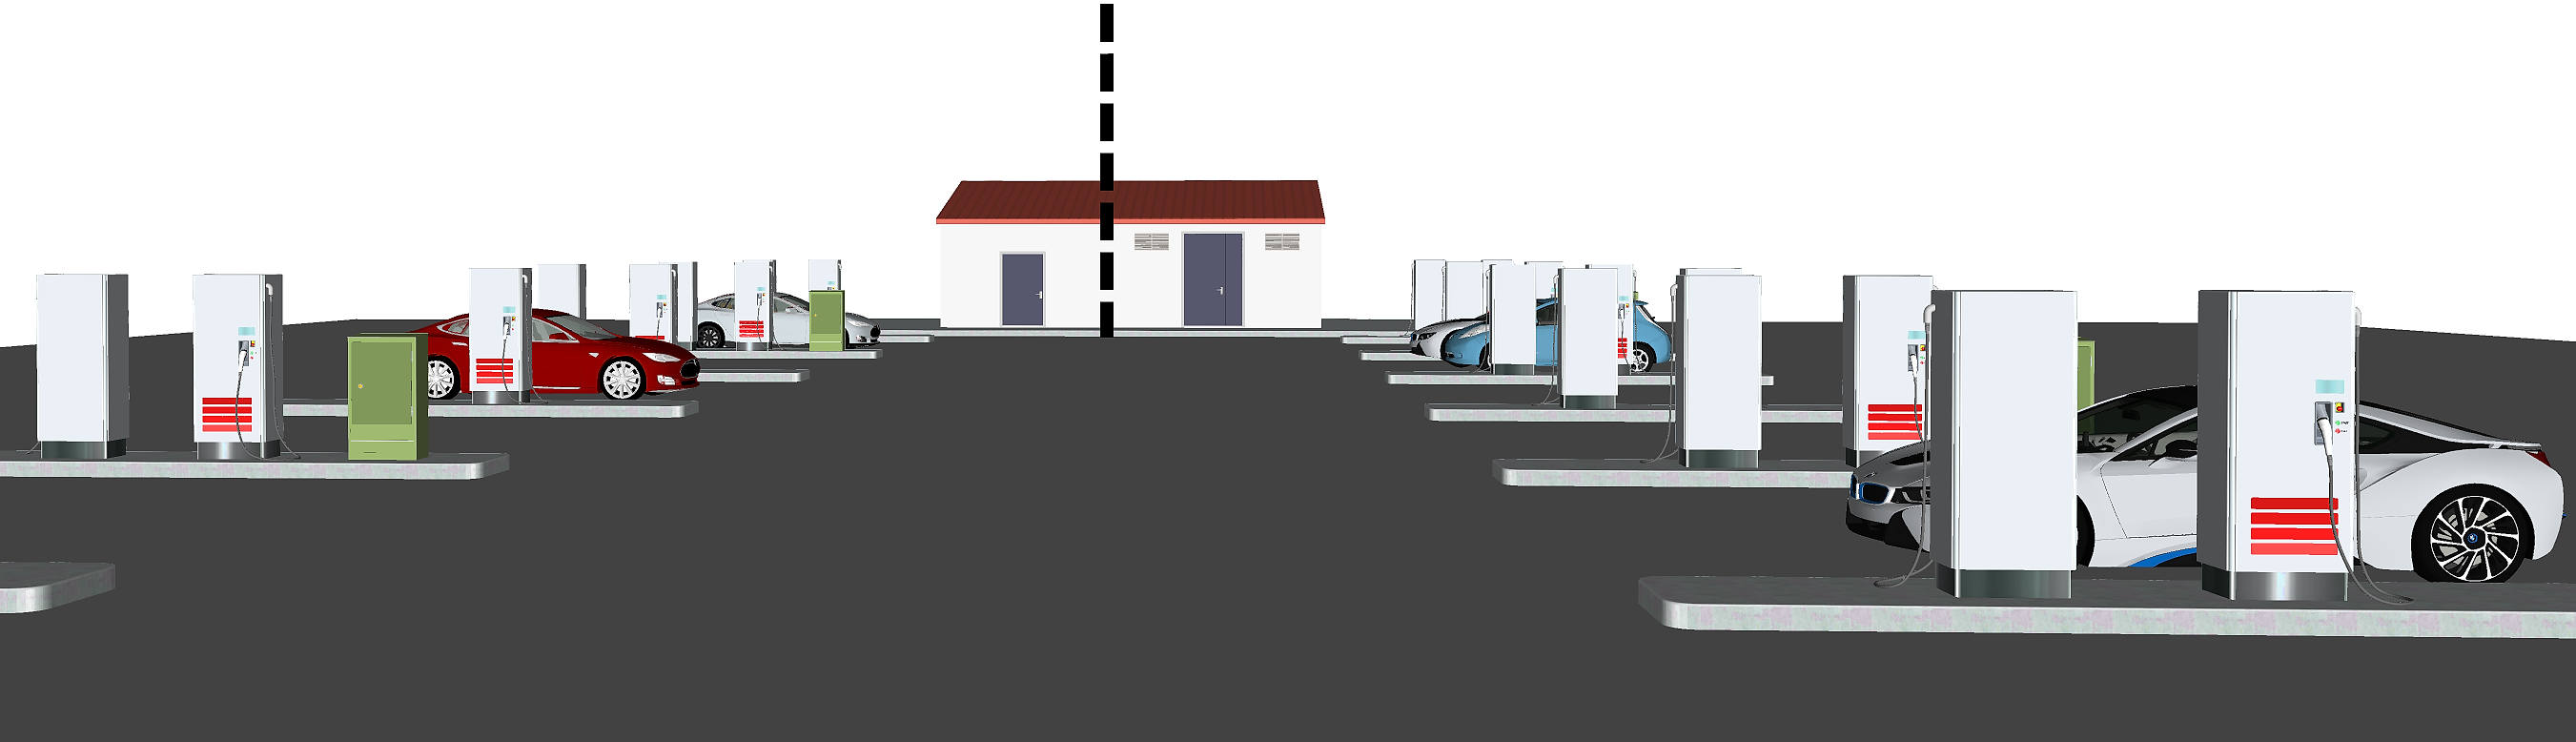 Illustrasjon viser ladestasjoner for biler